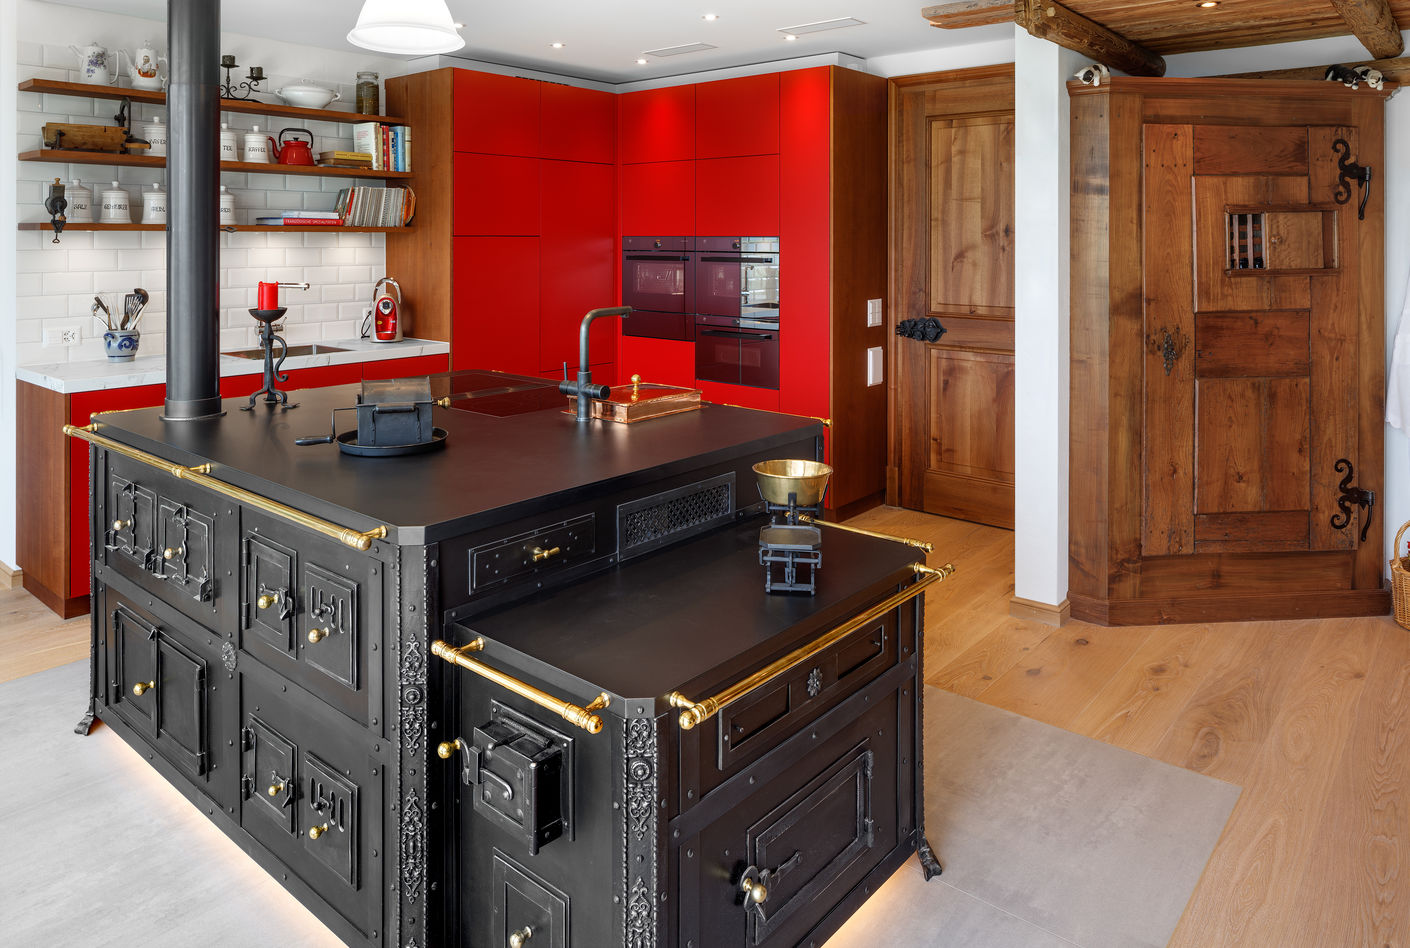 Die Romantik der Vergangenheit kontrastiert mit den roten Küchenfronten. Die Regale sind wie die Türe aus Nussbaumholz hergestellt, passend zur hölzernen Deckenverkleidung.